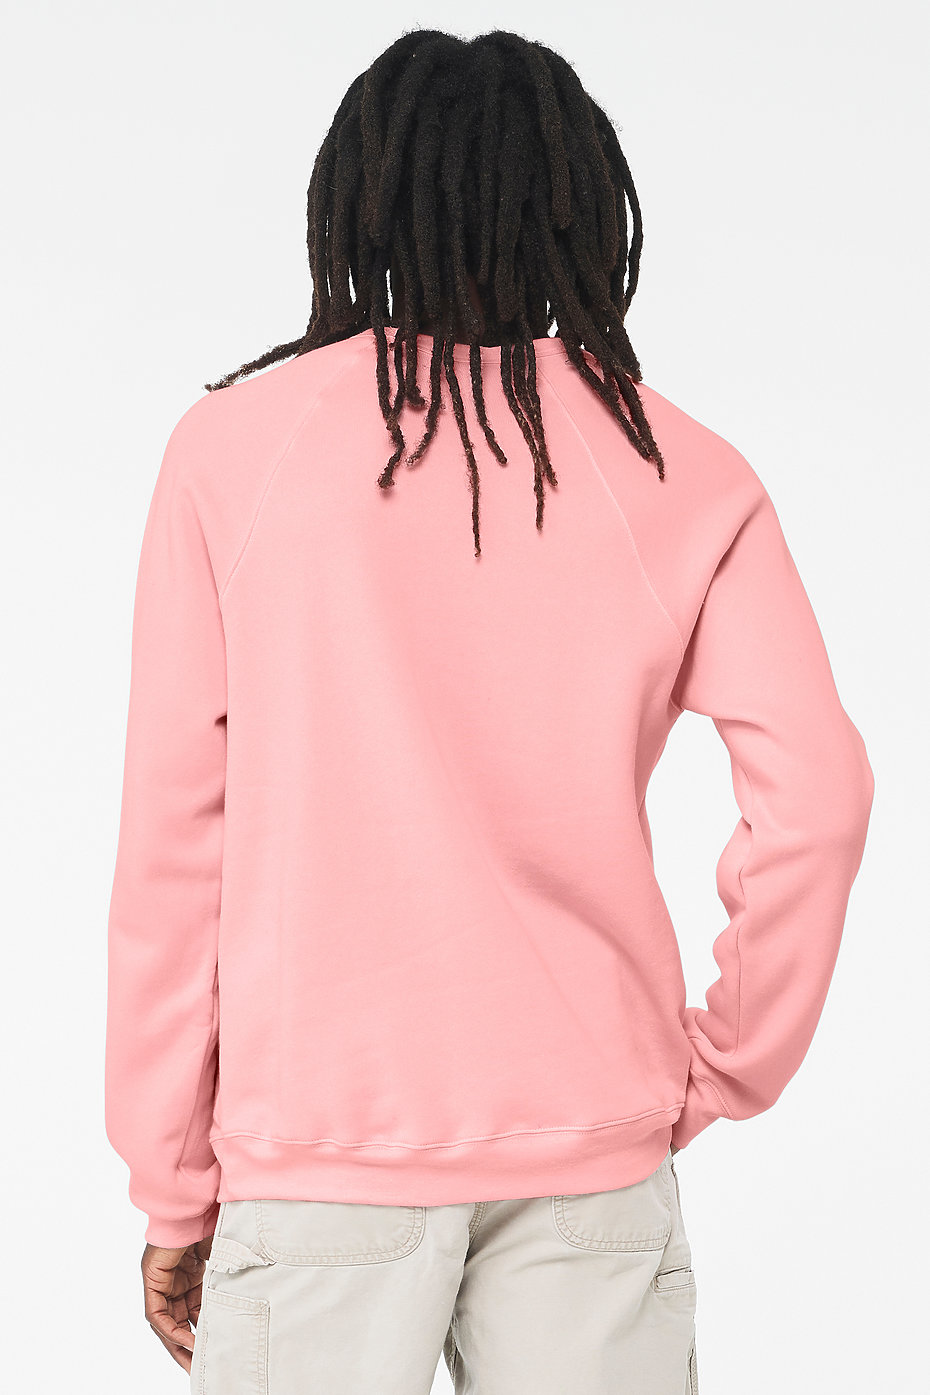 Fleece Sweatshirt with 40% discount!